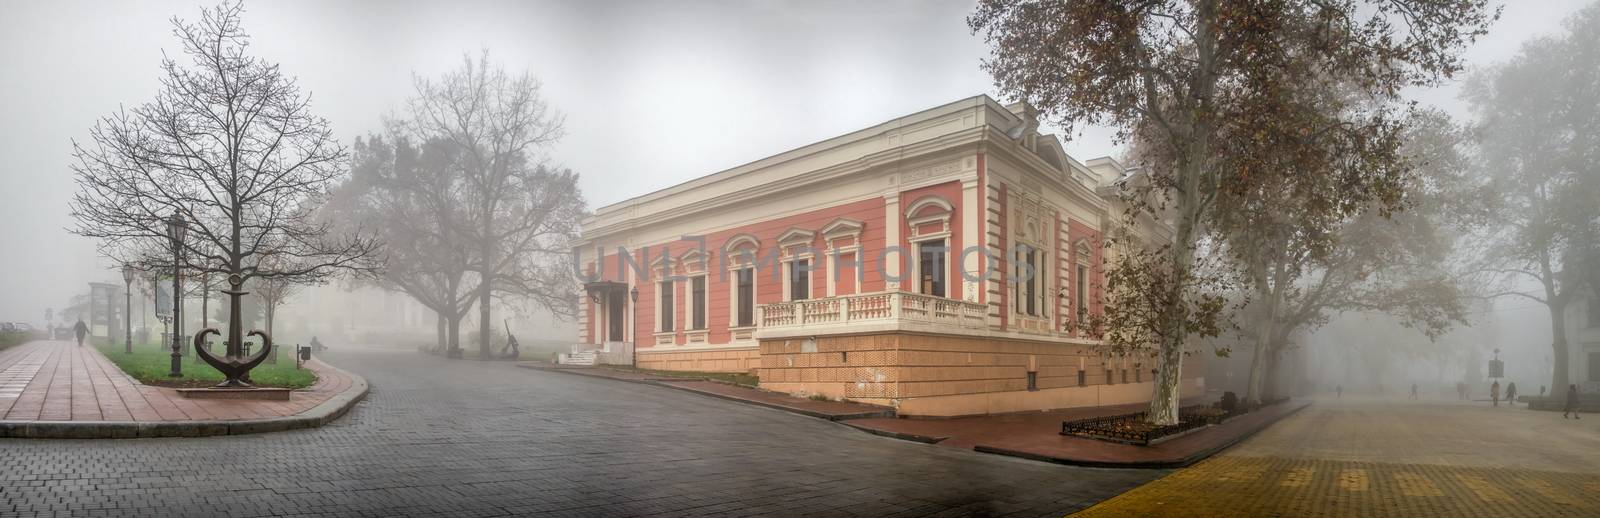 Maritime Museum in Odessa, Ukraine by Multipedia